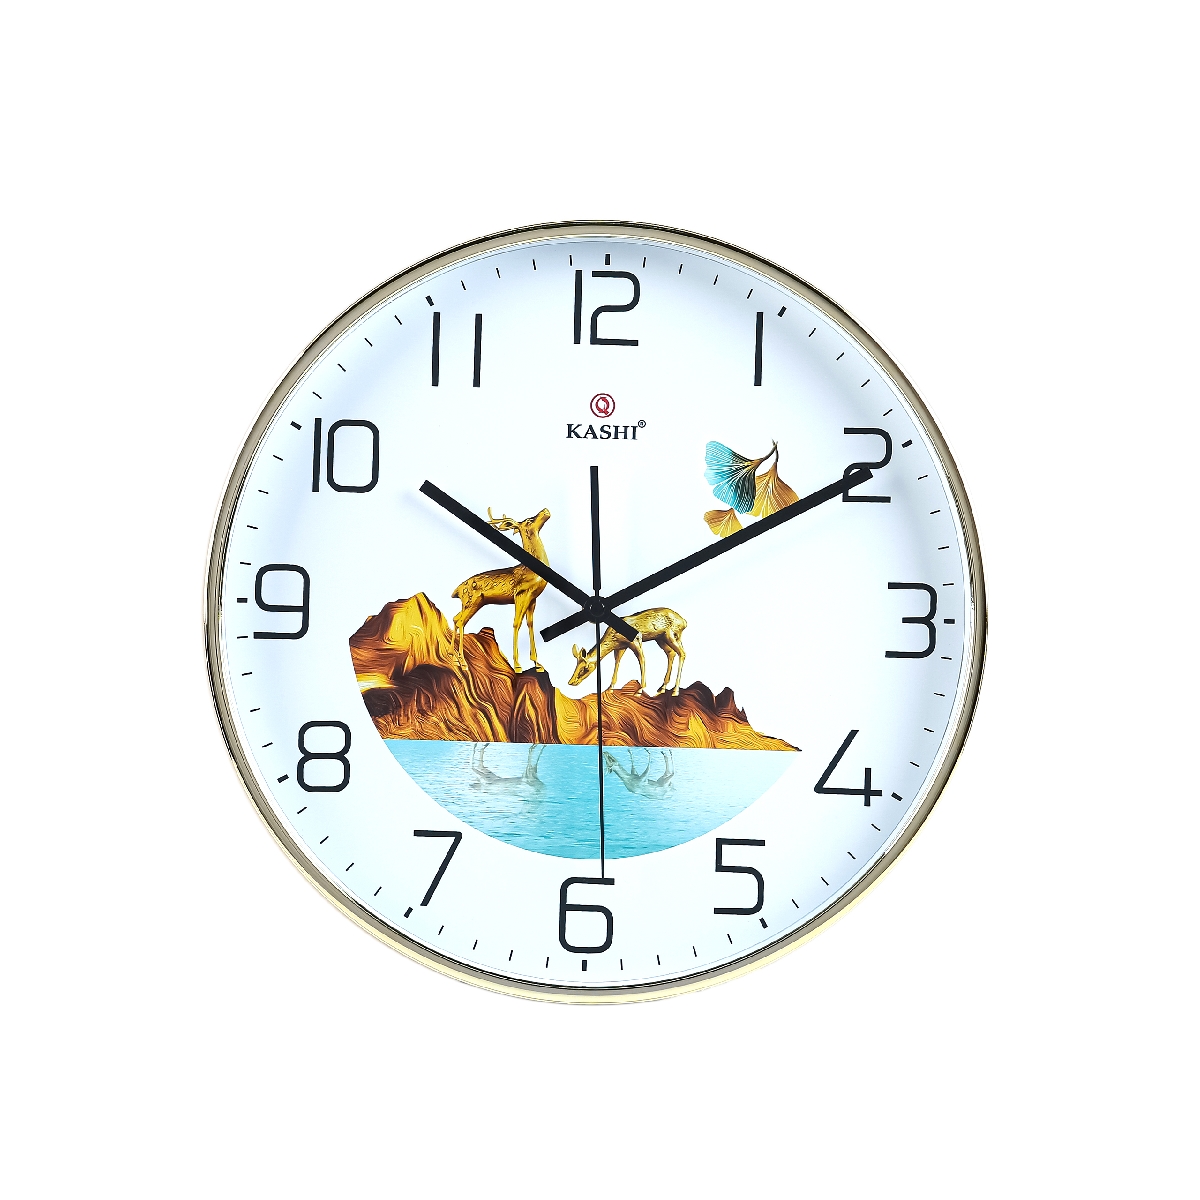 Đồng hồ treo tường Kashi HM380-2 Kashi Clock